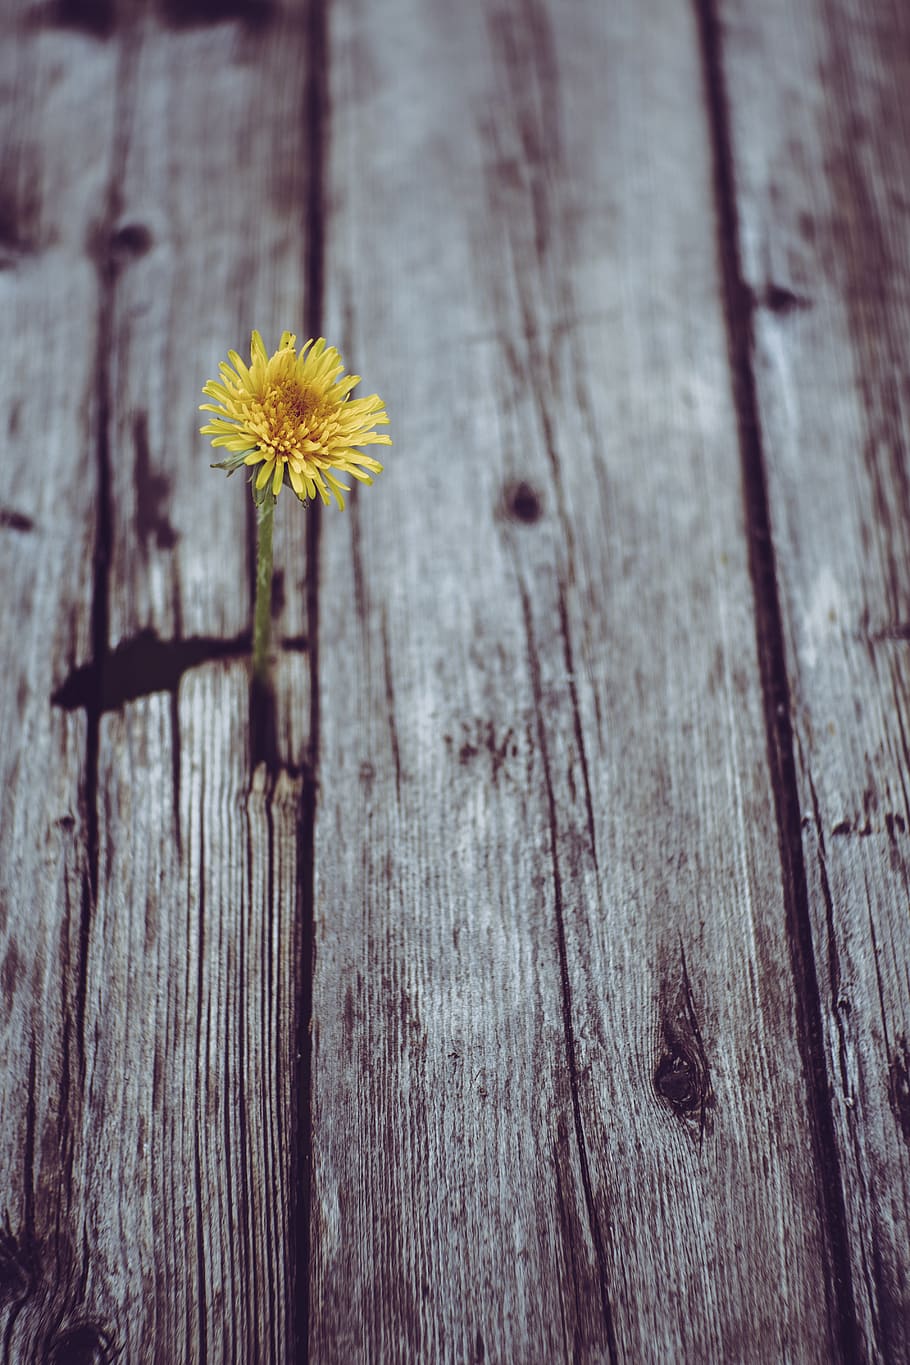 Một bông hoa hướng dương vàng nở rực rỡ trên nền tường ván xám sẽ khiến bạn cảm thấy như đang sống trong một không gian tràn đầy sức sống và tiếng cười. Sự kết hợp giữa màu sáng và tối tạo nên một hiệu ứng độc đáo, mang đến sự ấm áp và dễ chịu cho bạn mãi mãi.